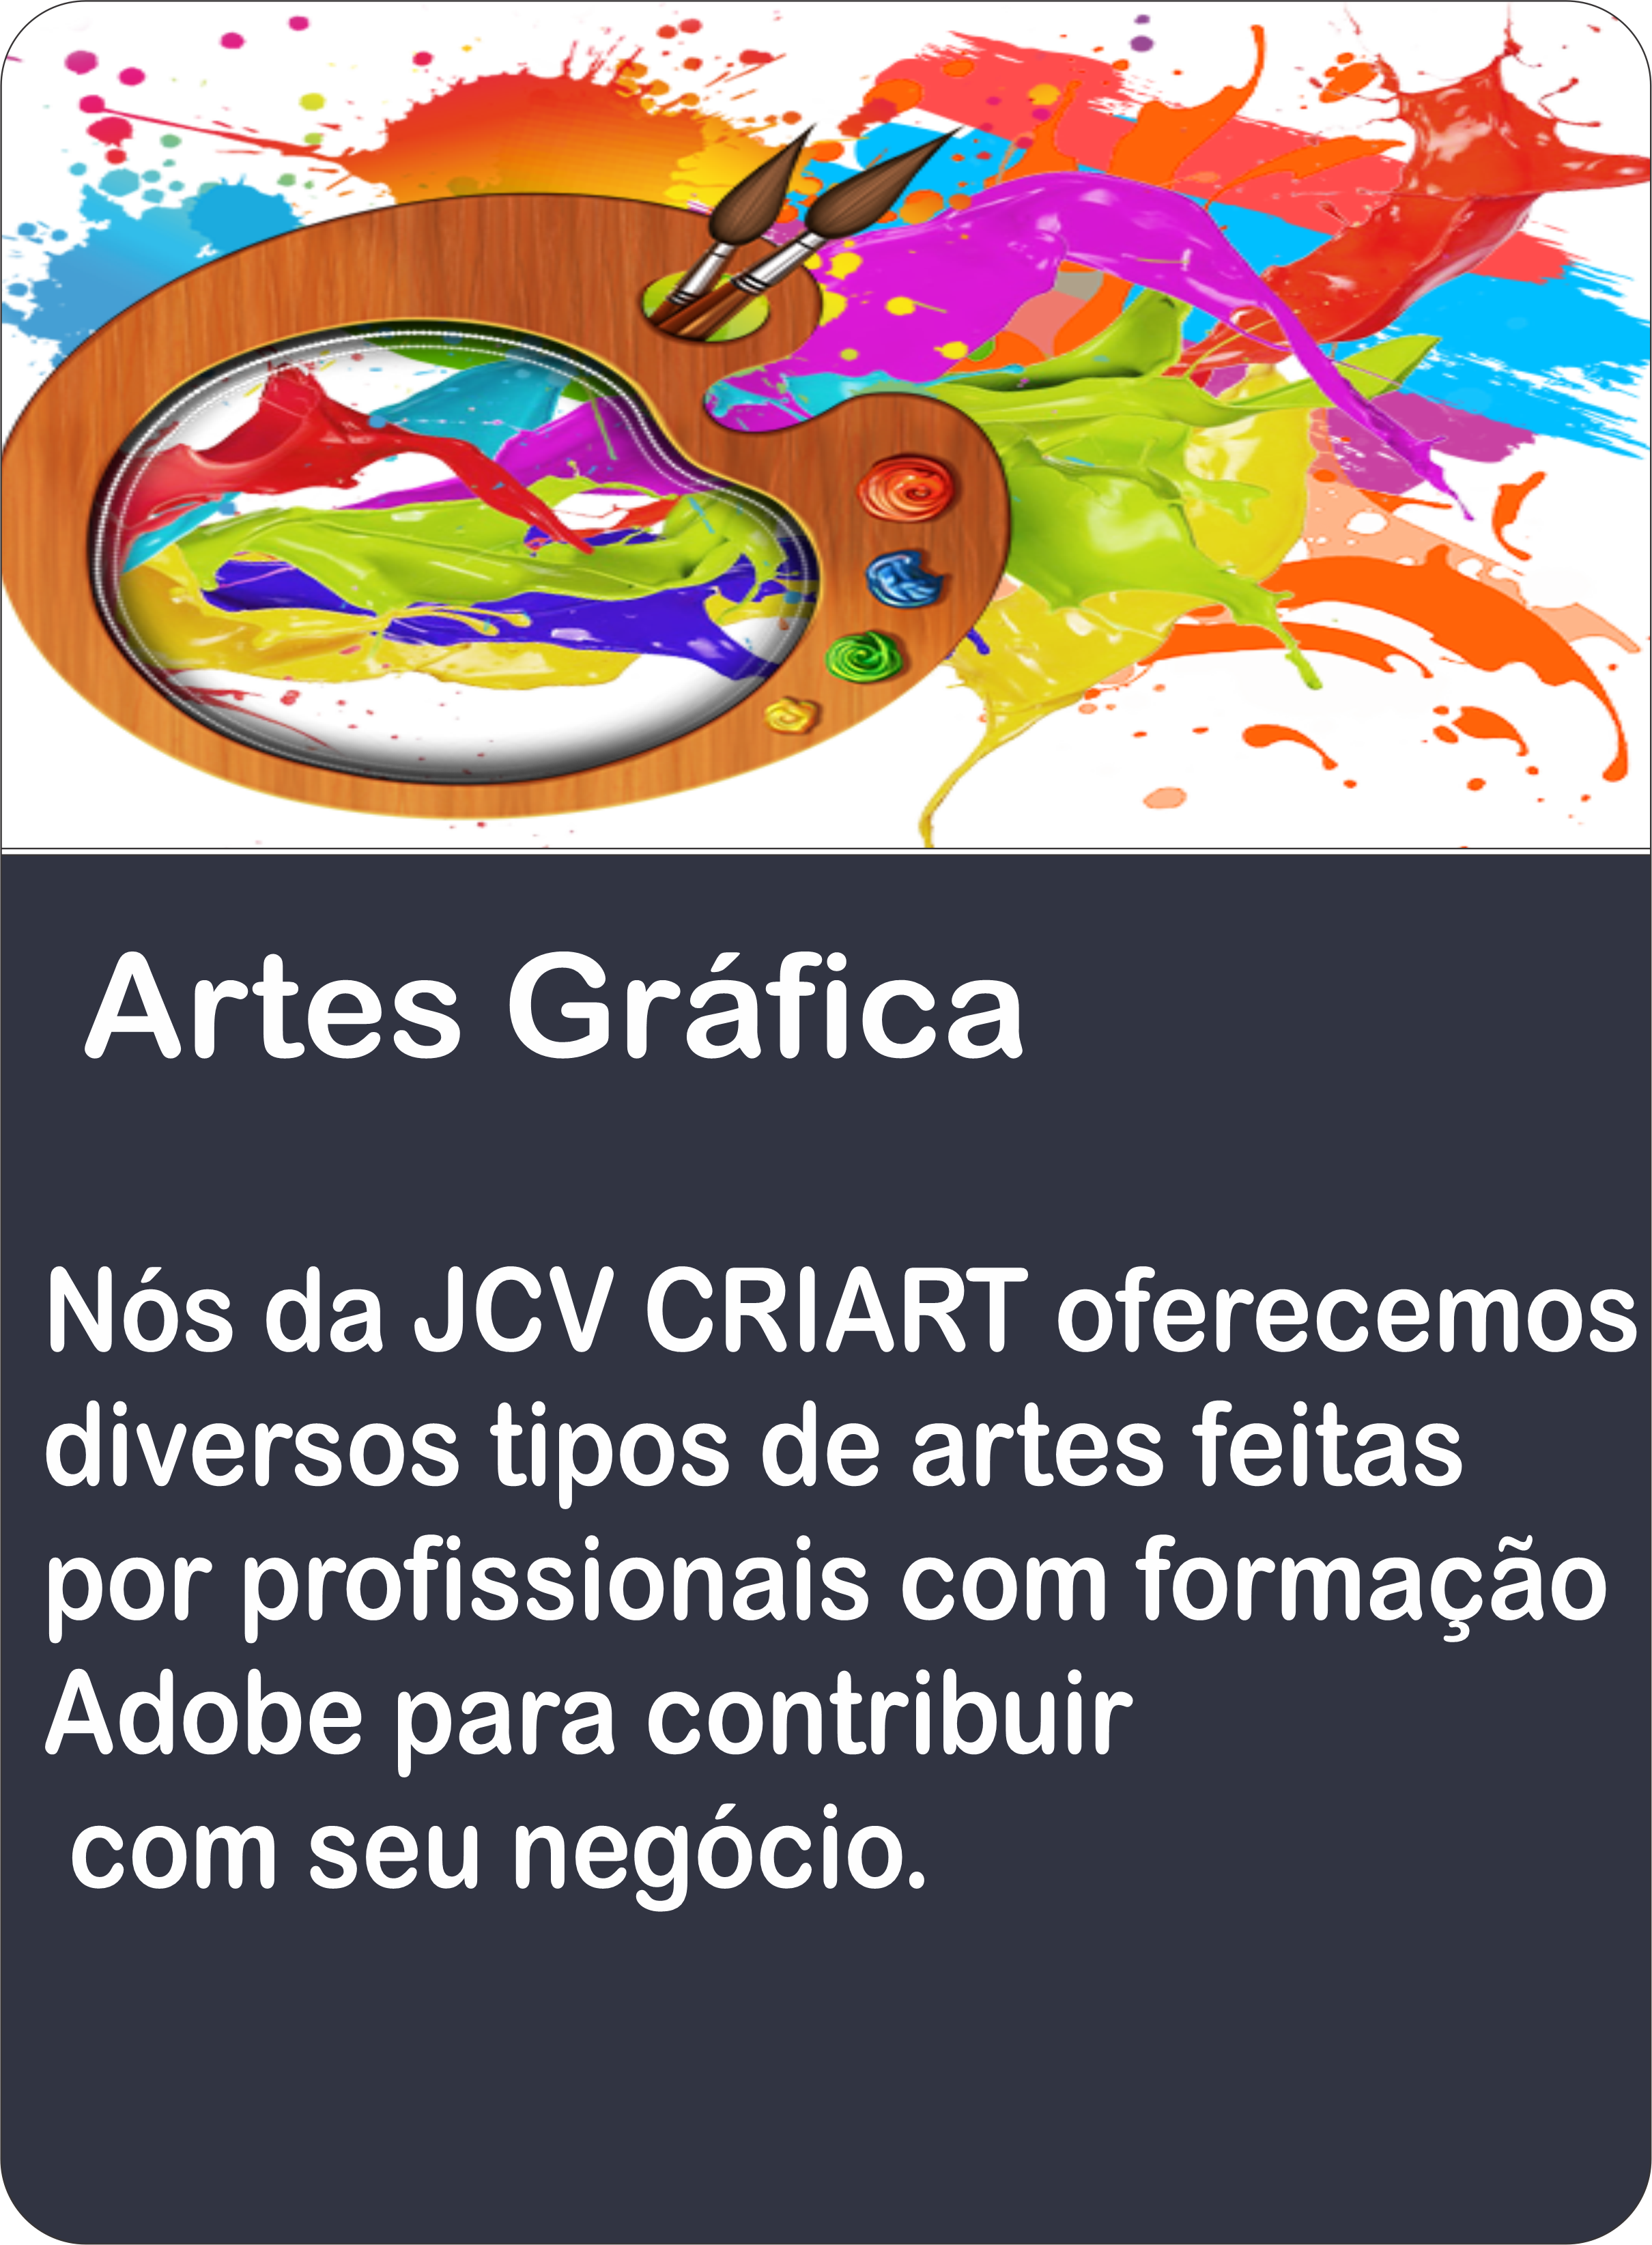 Artes Grafica

Nos da JCV CRIART oferecemos
diversos tipos de artes feitas
por profissionais com formacao
Adobe para contribuir

com seu negocio.

\ yy